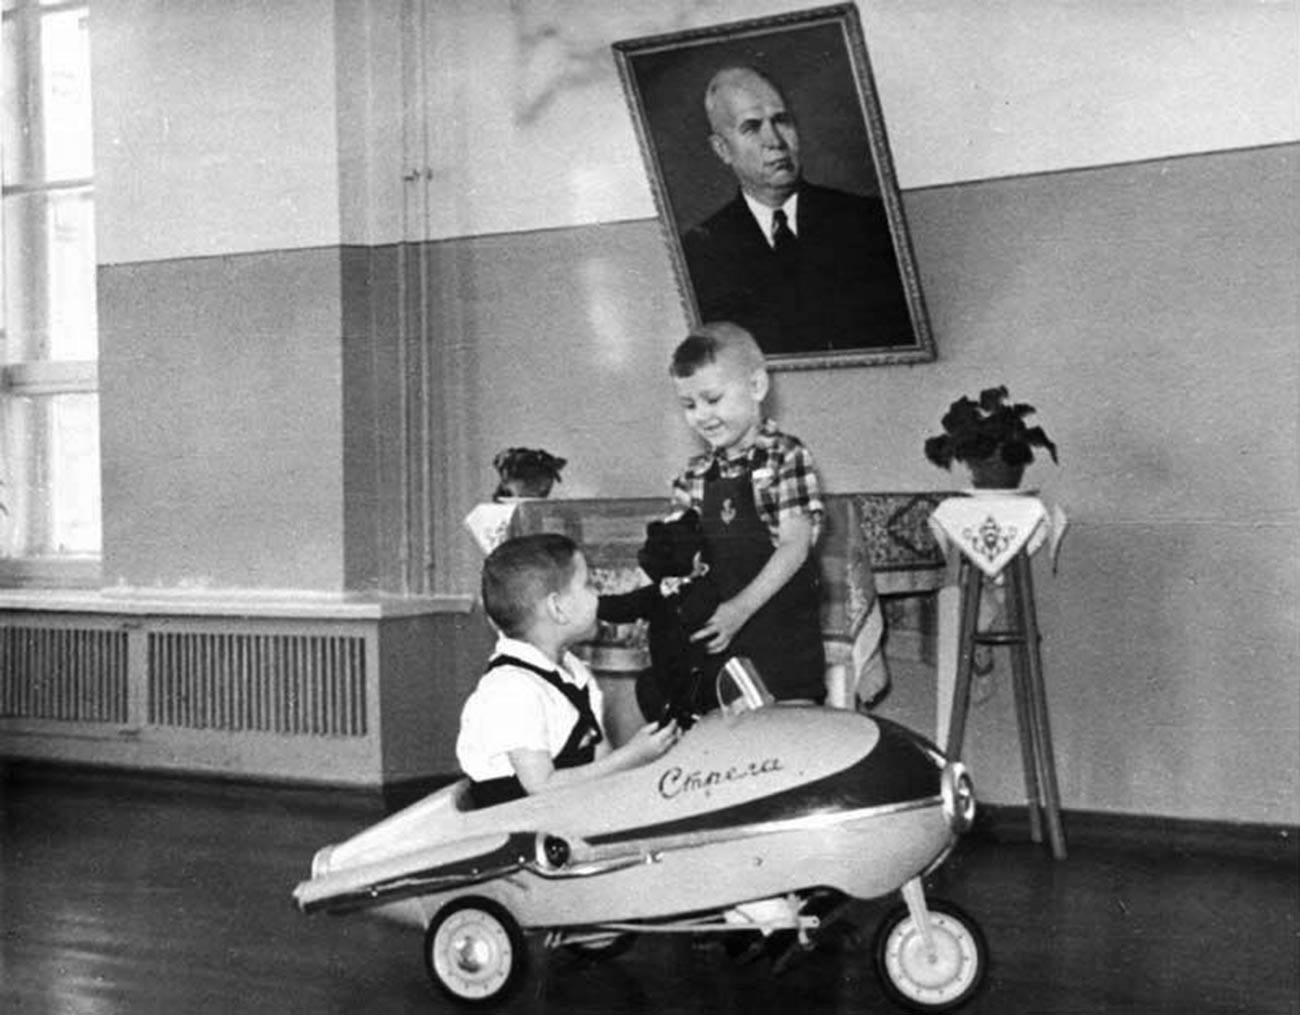 ペダル式自動車“ストレラ”で遊ぶ子どもたち、1962年